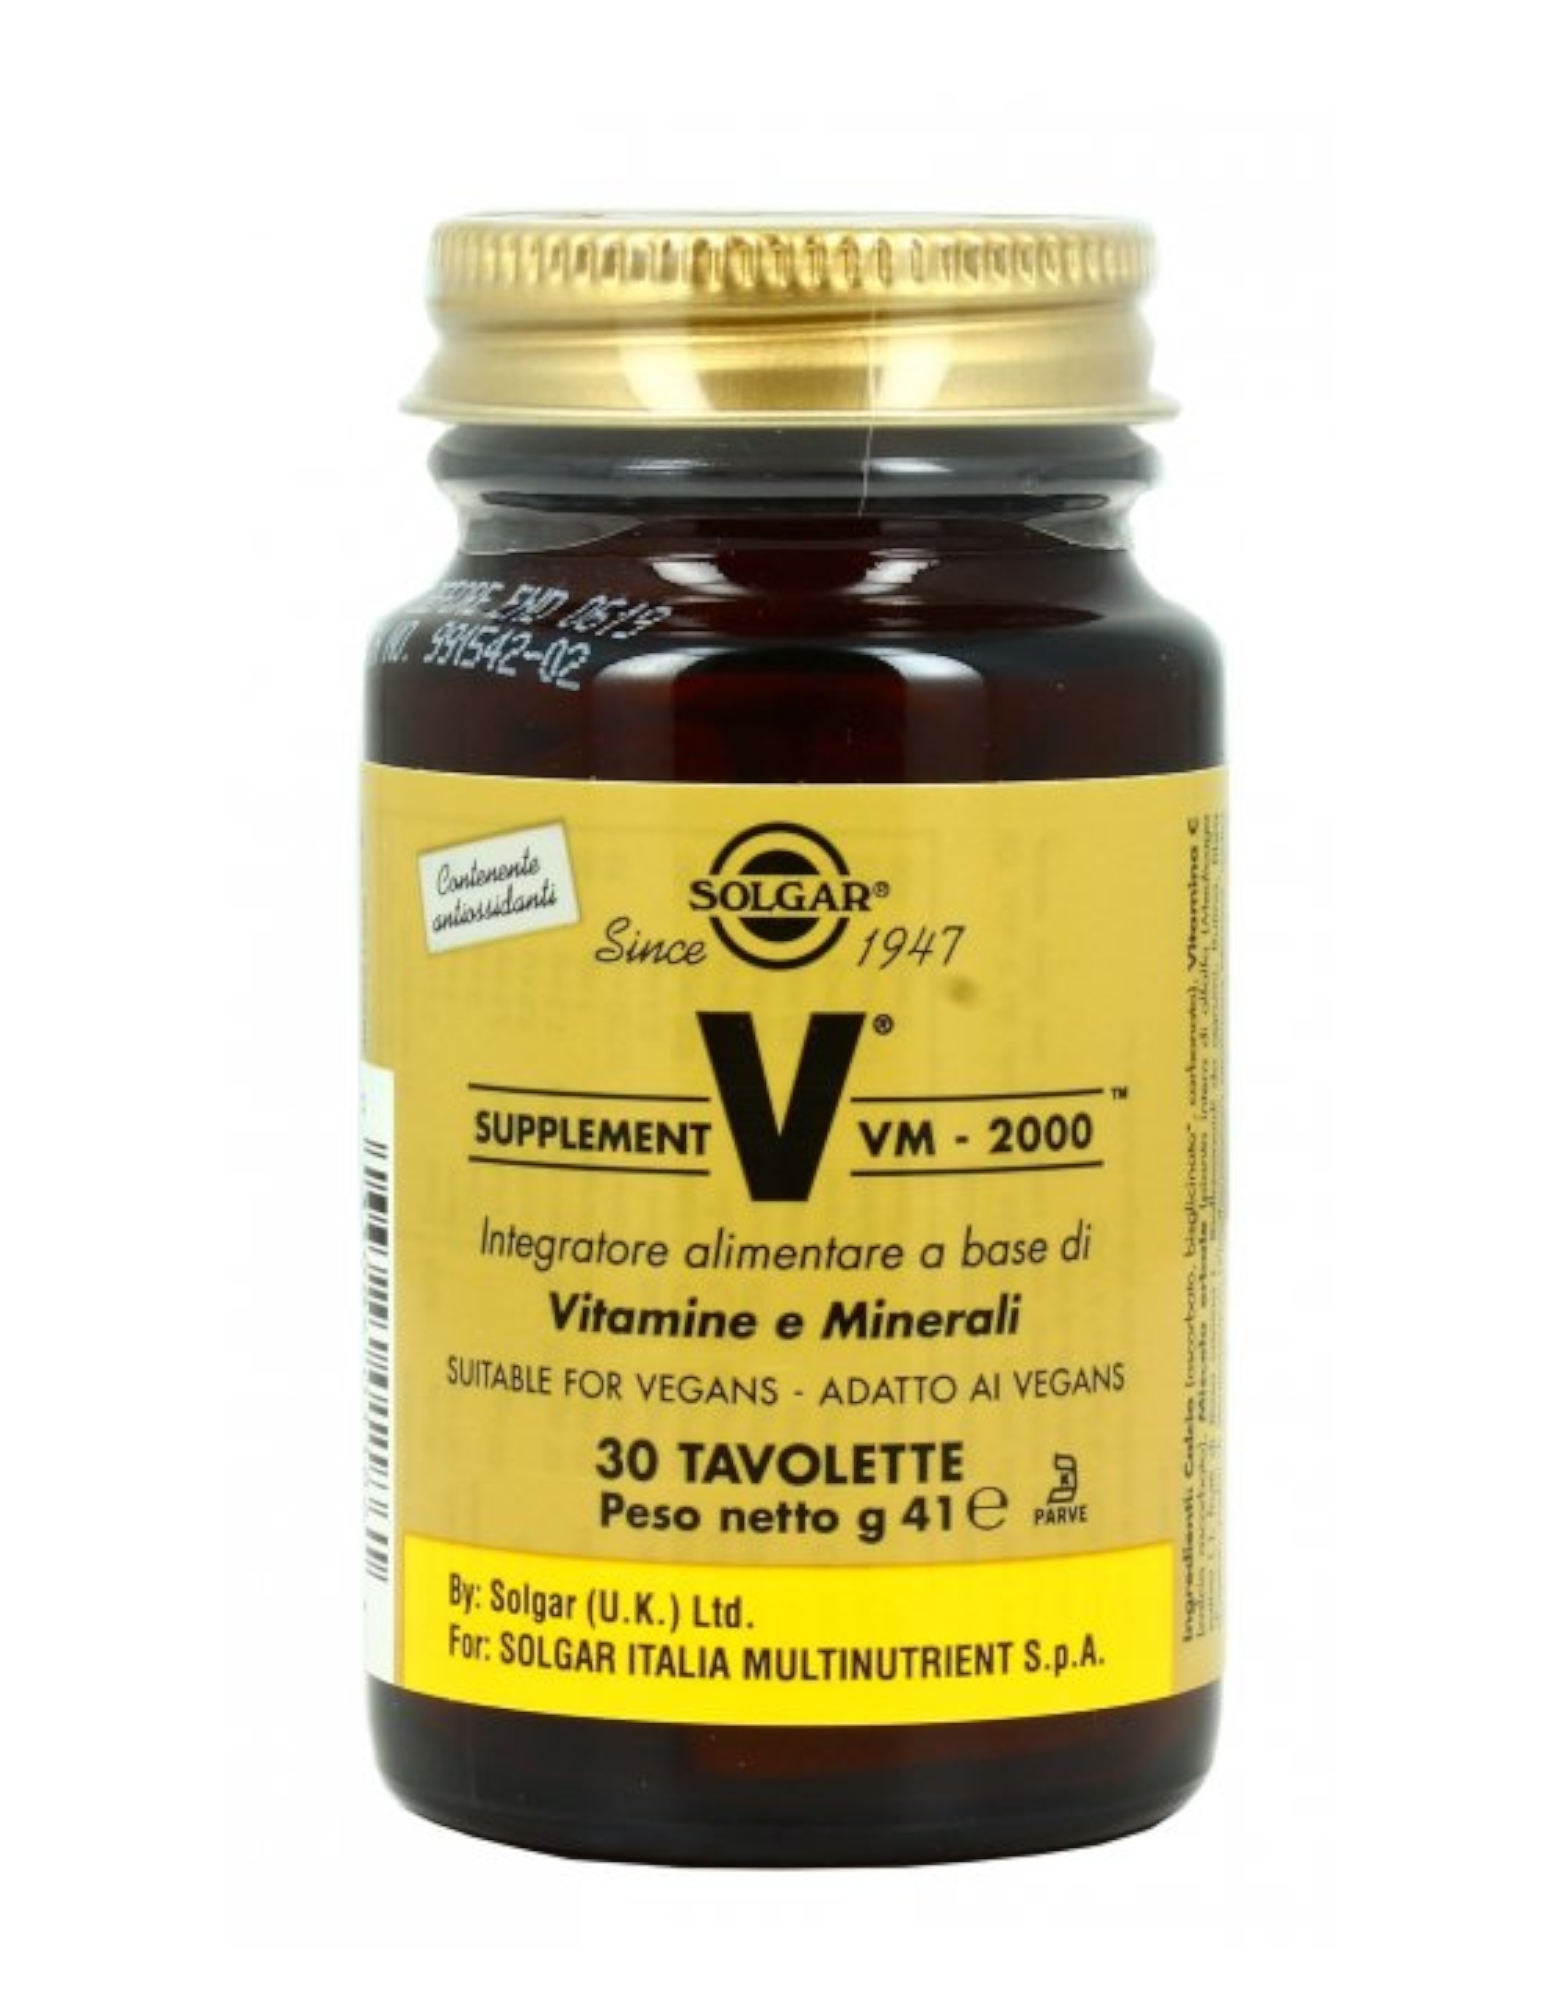 VM-2000 Supplement - 30 tavolette